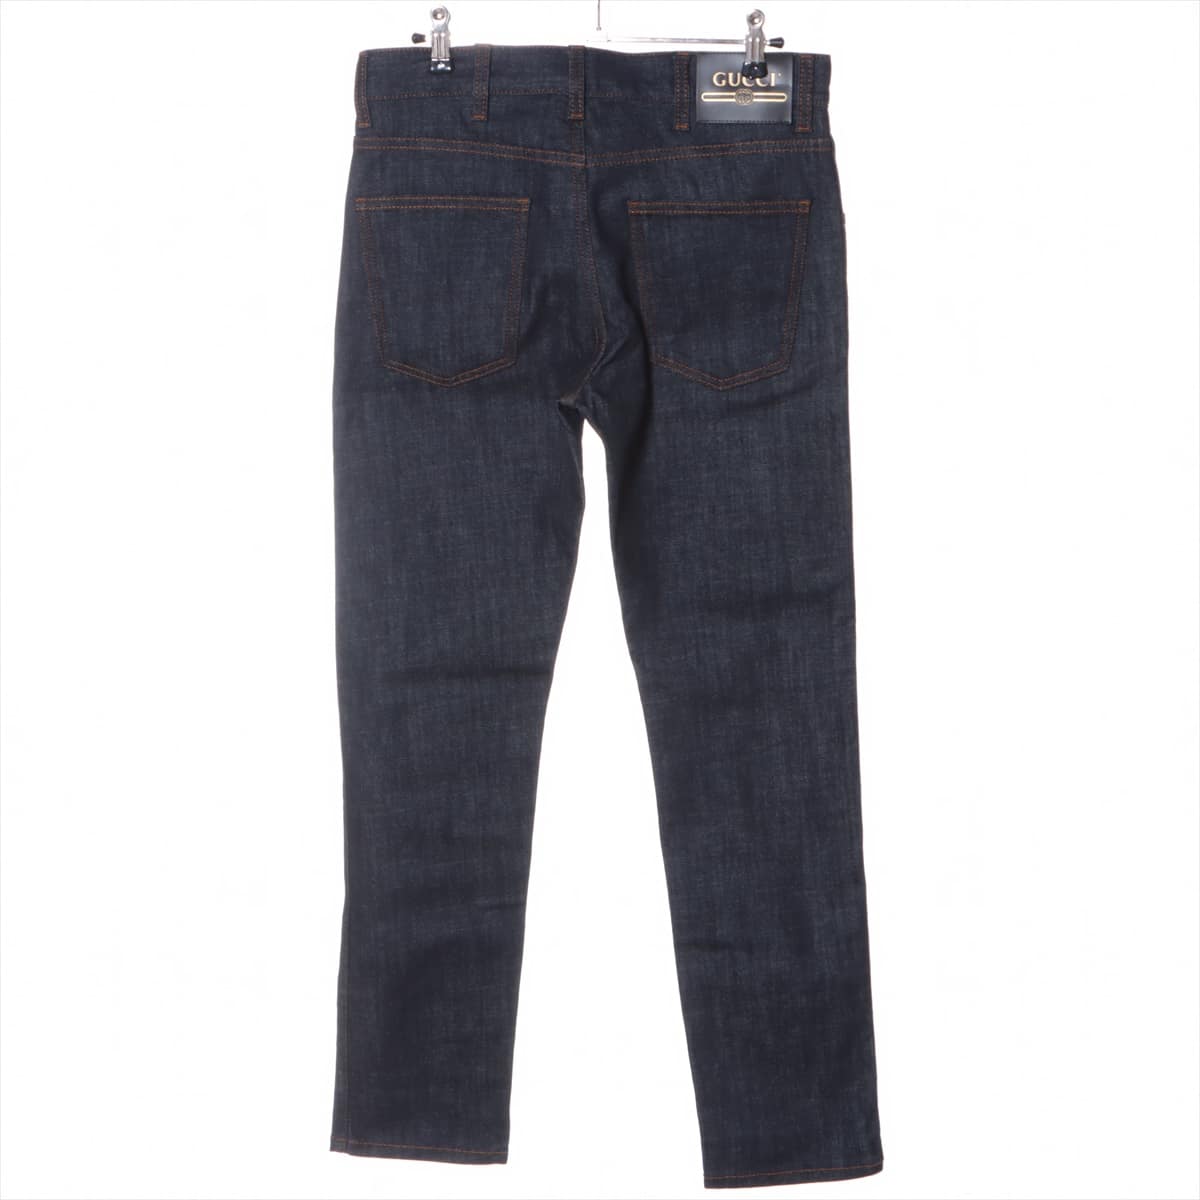 Gucci Cotton & polyurethane Denim pants 28 Men's Navy blue  408637